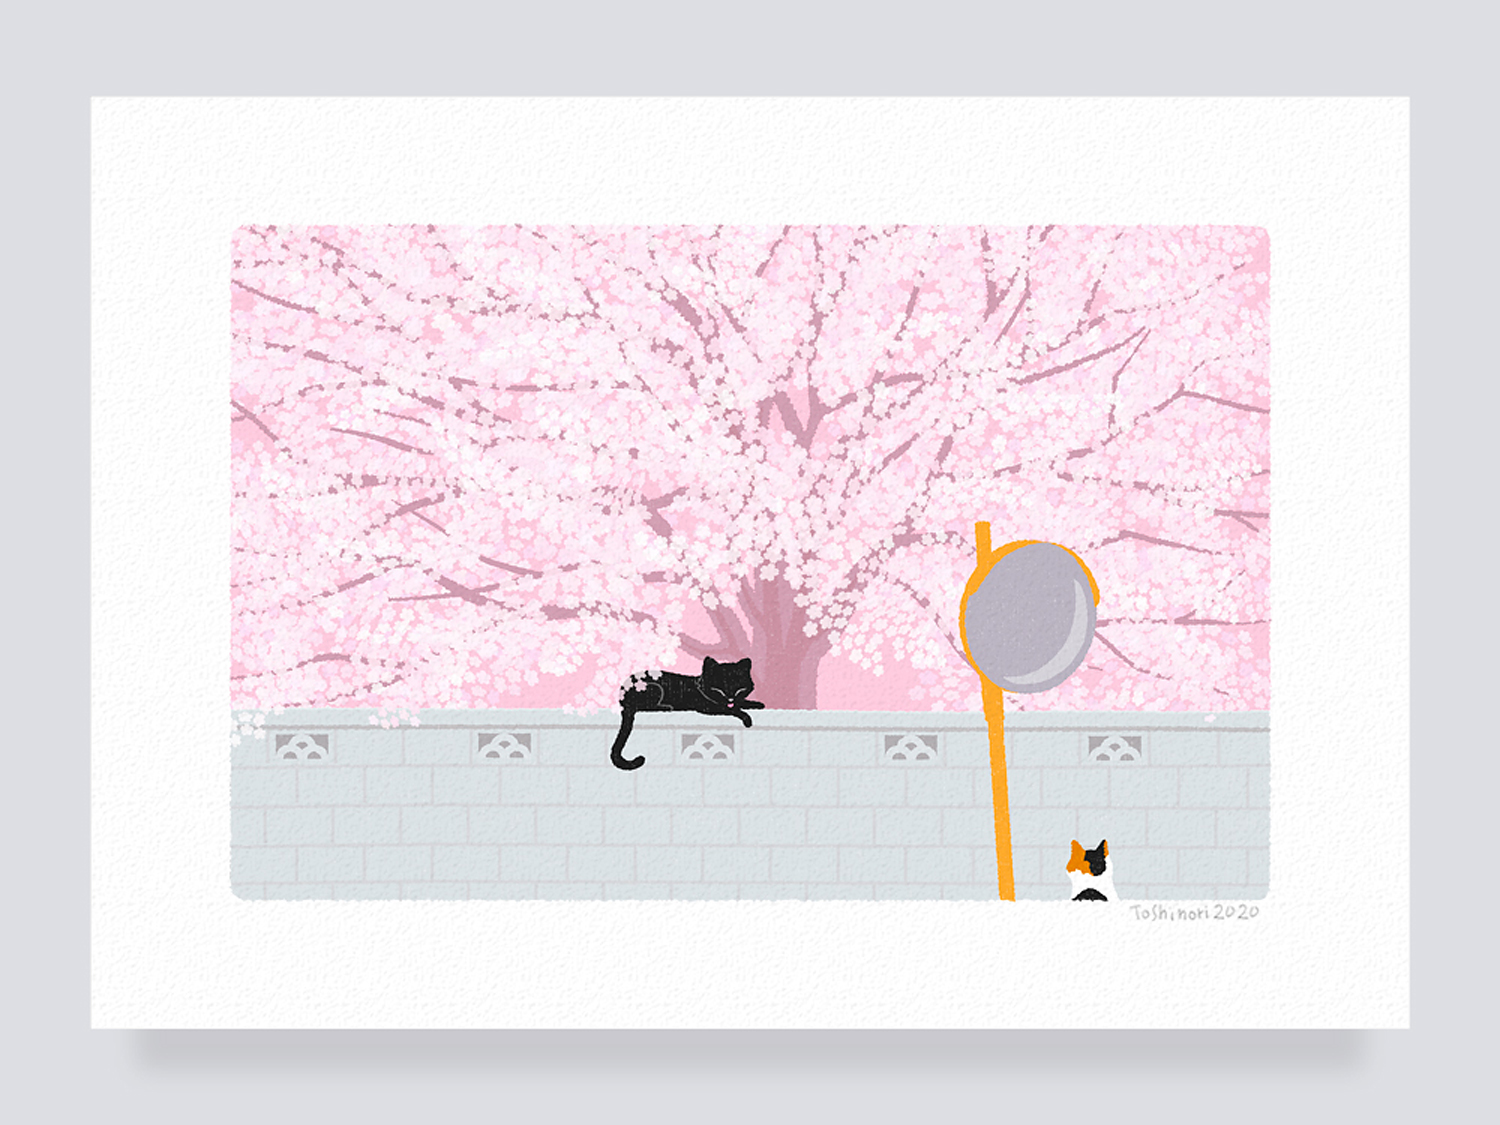 イラストフレーム 04 桜の樹の下で Iichi ハンドメイド クラフト